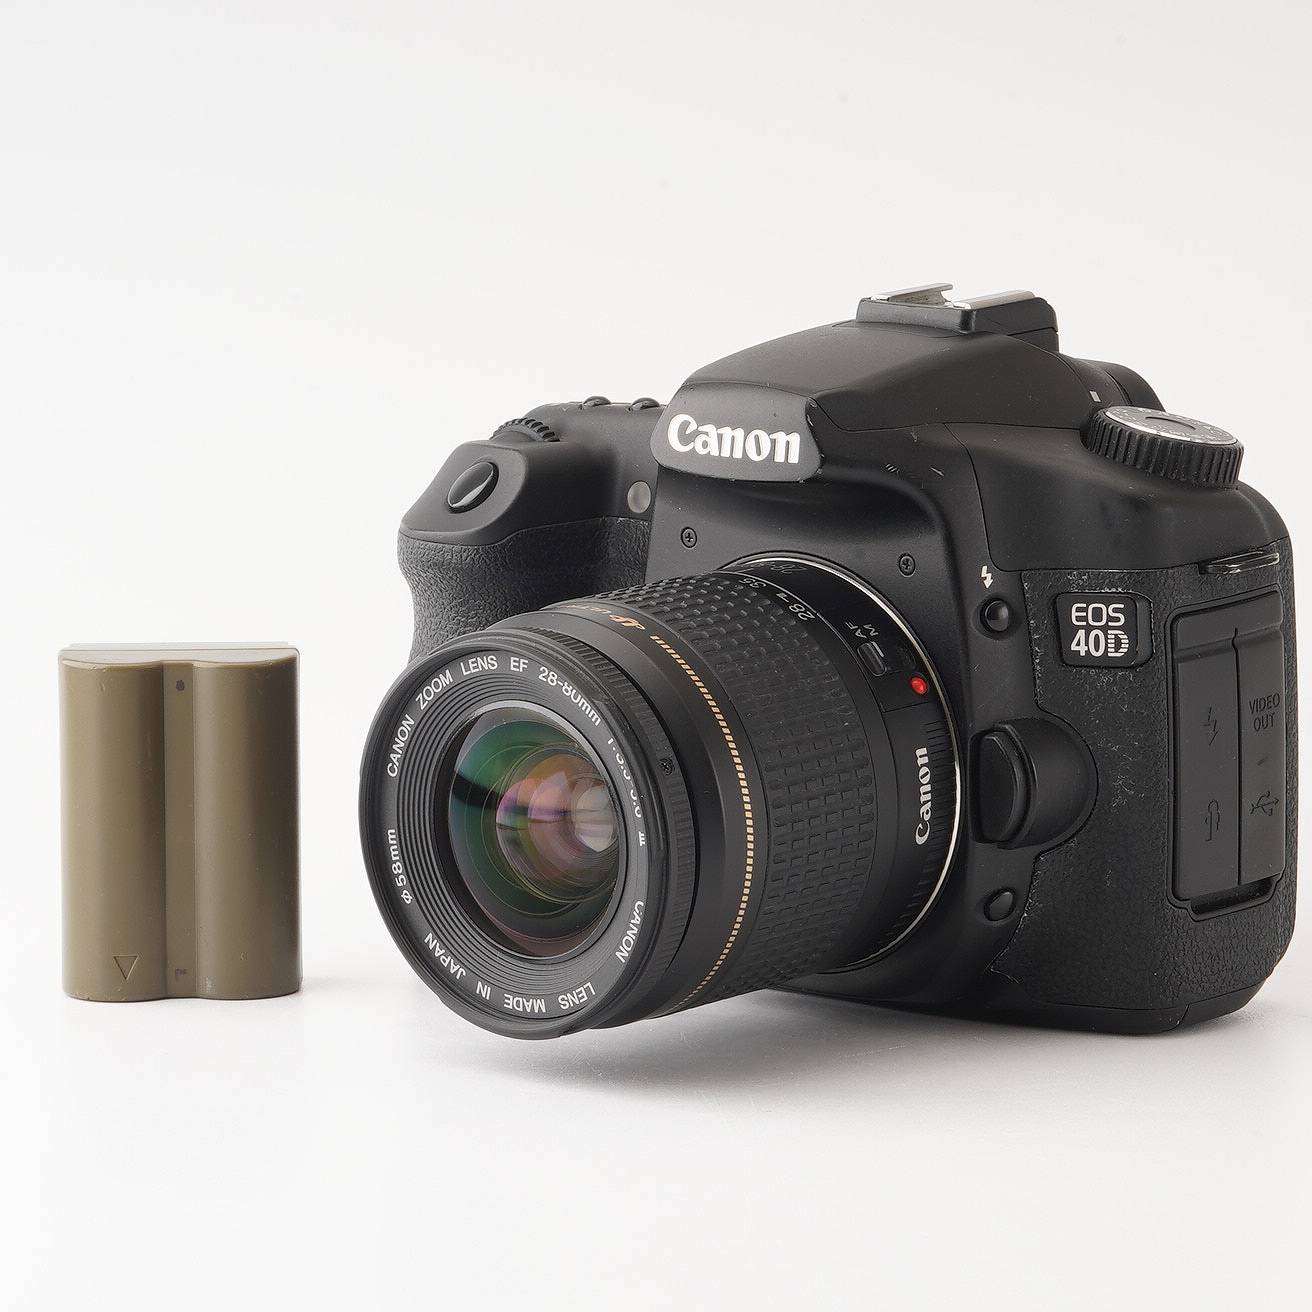 Υ Canon EOS 40D / ZOOM EF 28-80mm F3.5-5.6 III USM